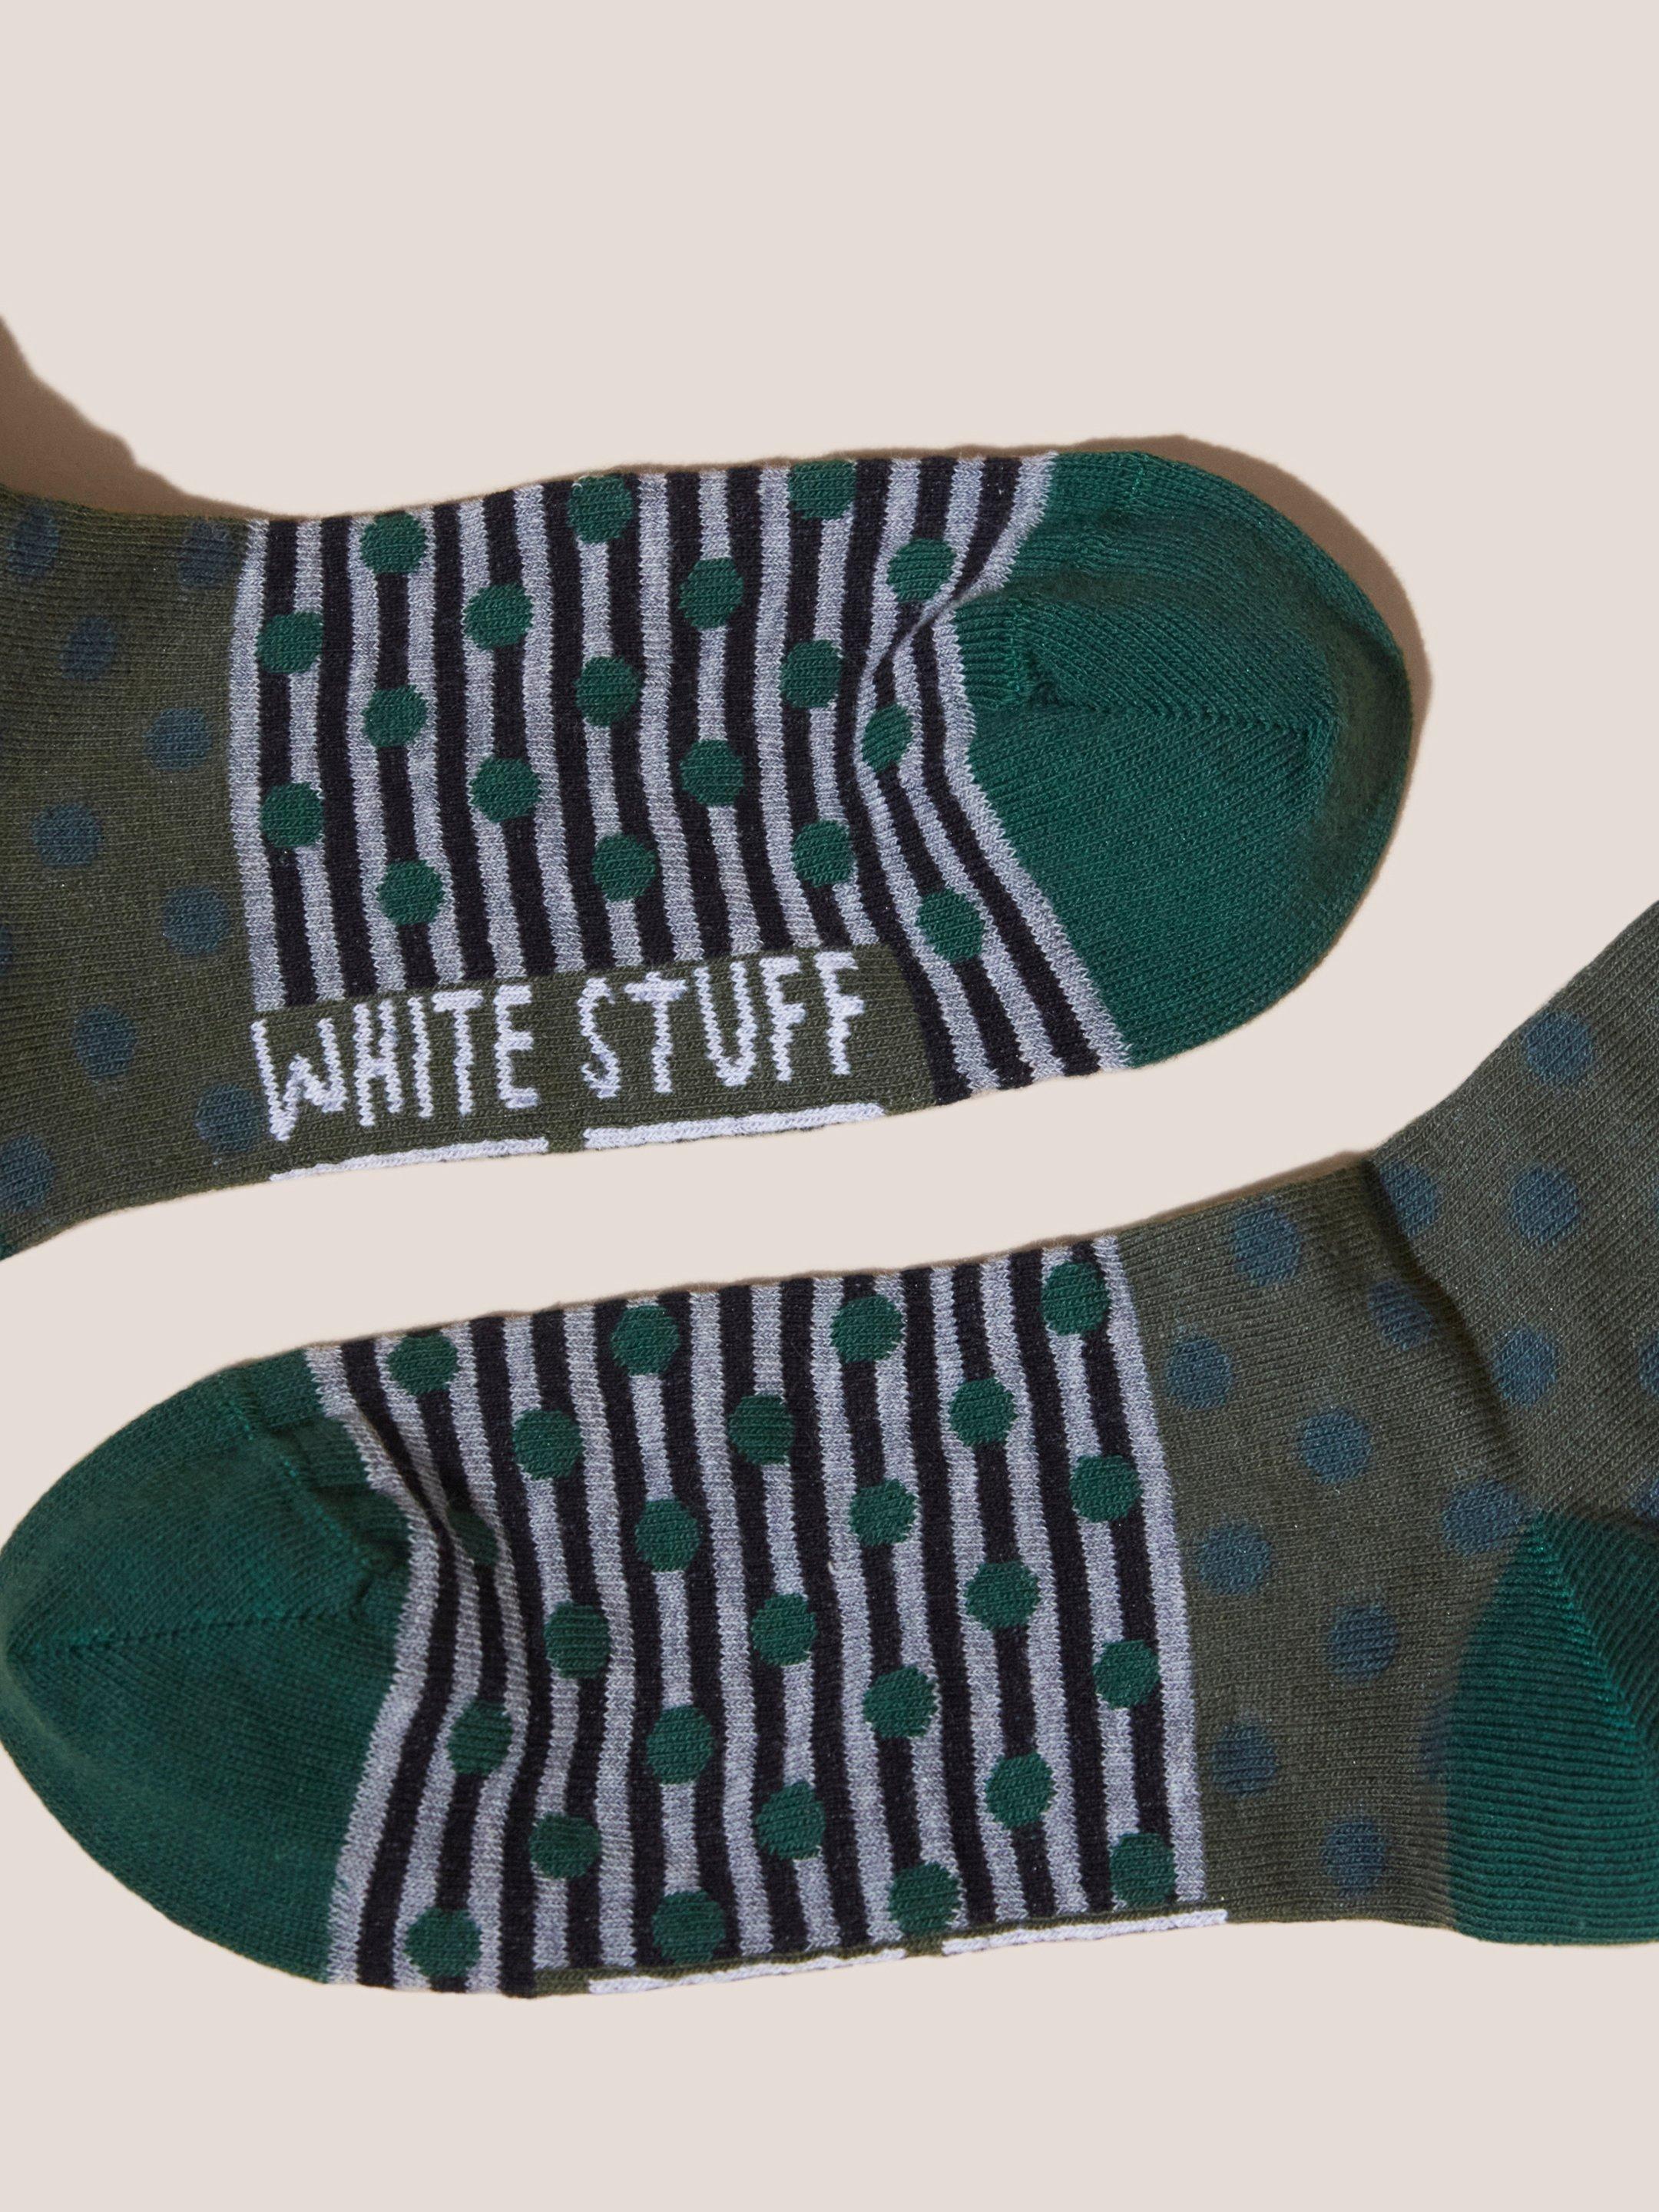 Spot Stripe Sock in GREEN MLT - FLAT FRONT